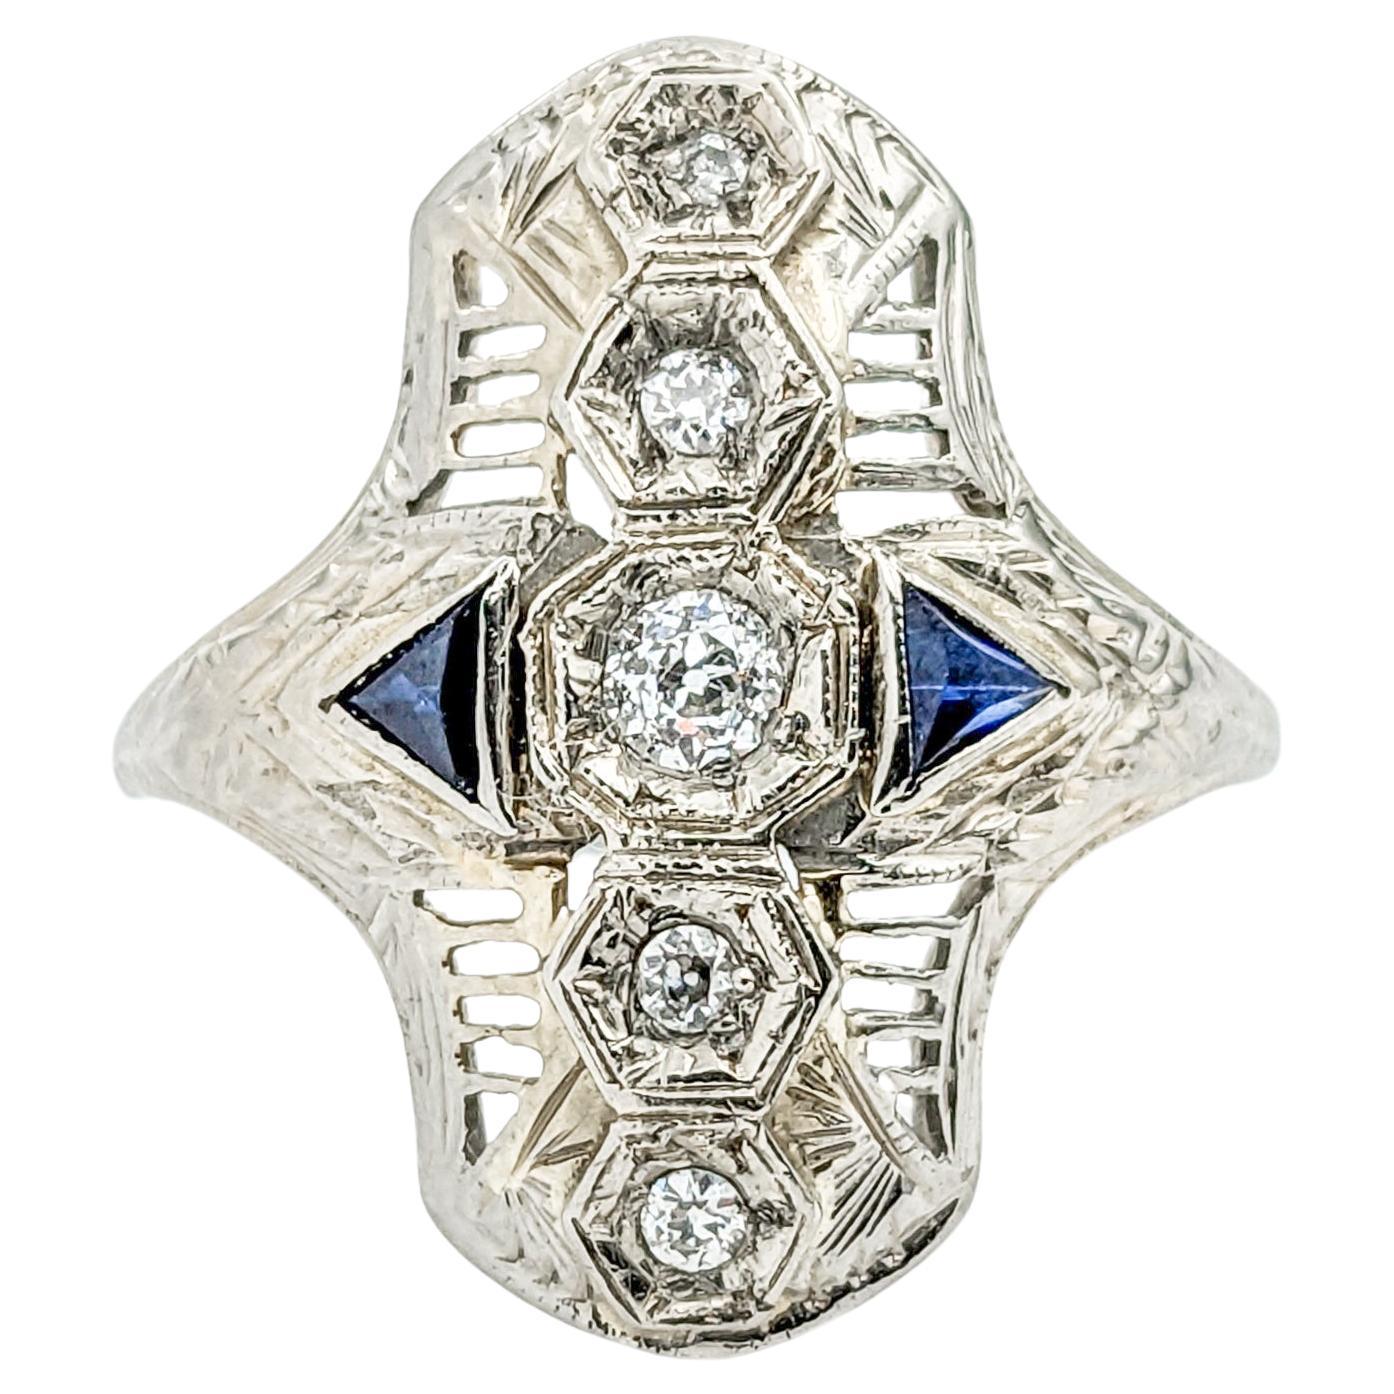 Antique Art Deco Diamond & Sapphire Filigree Shield Ring In White Gold